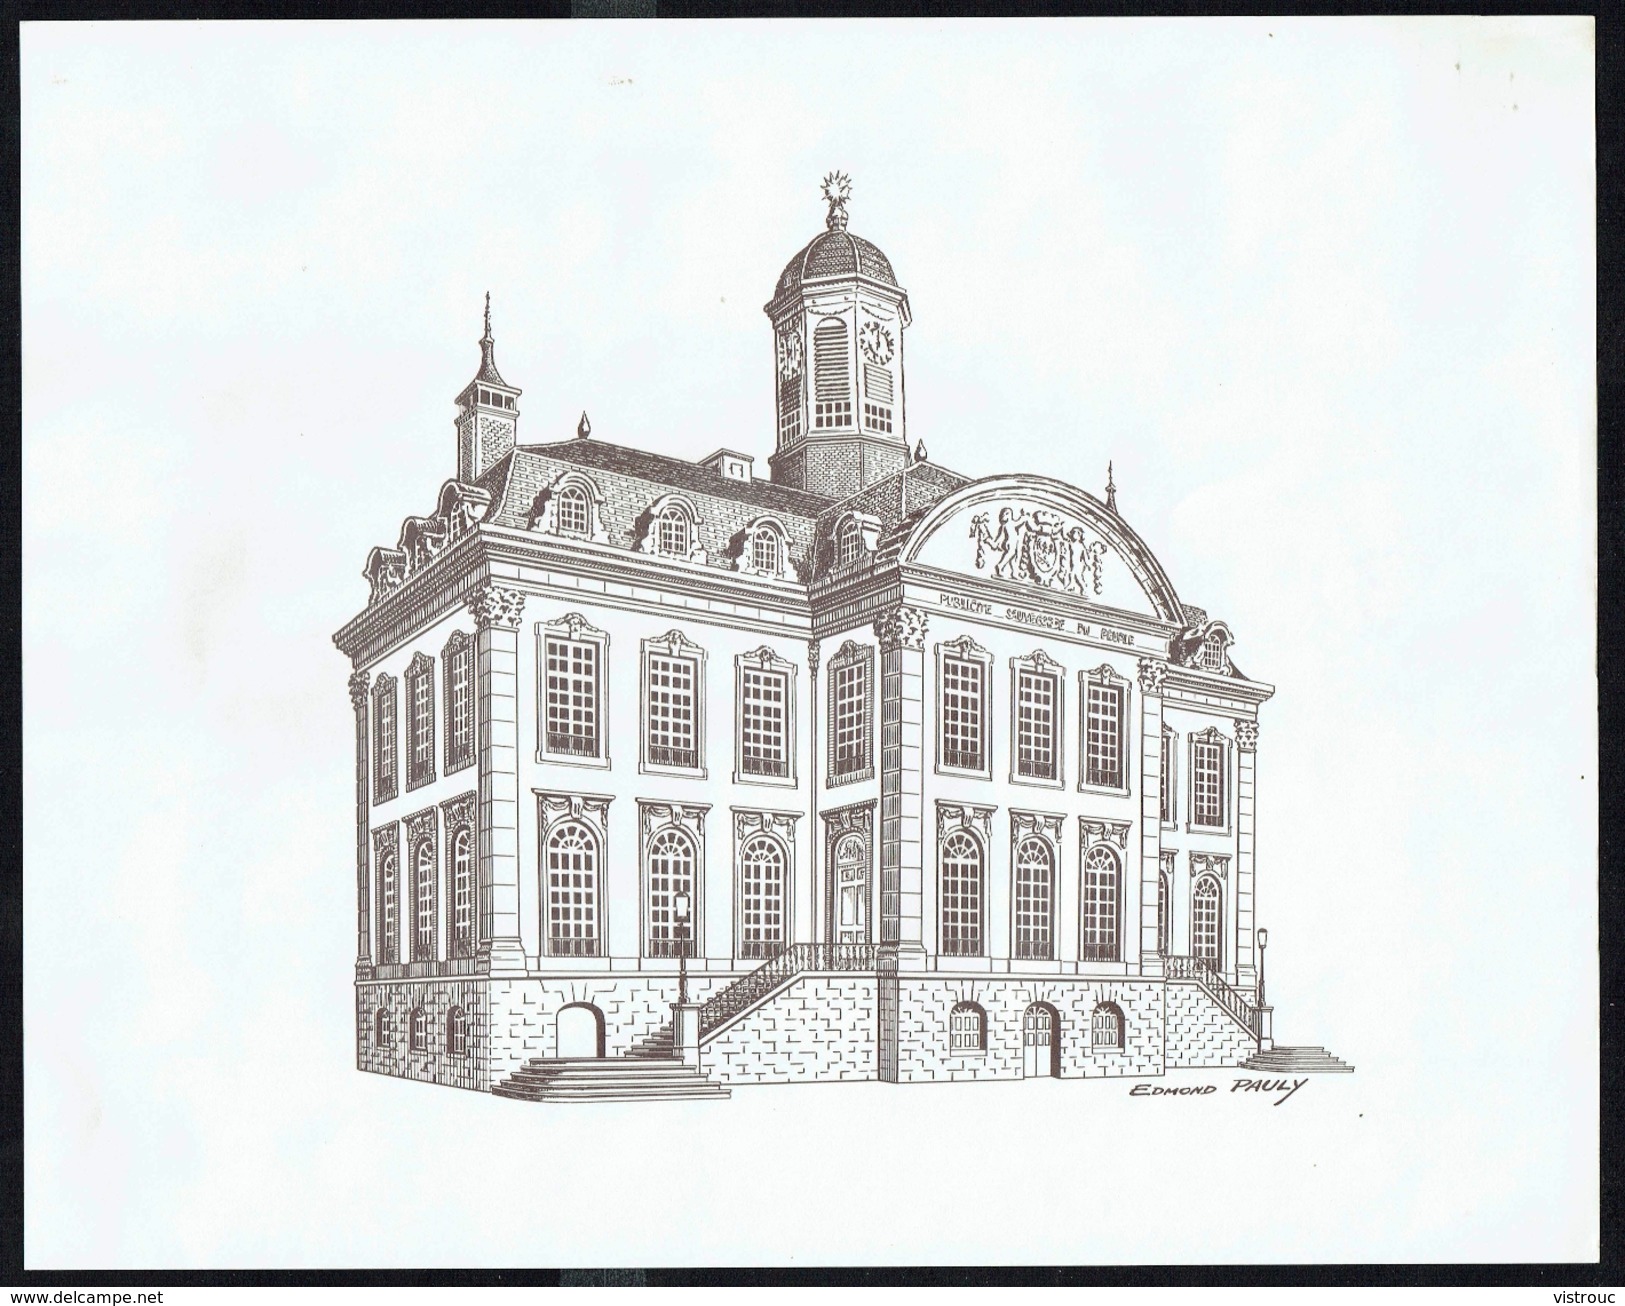 "L'Hôtel De Ville De Verviers", Par Edmond PAULY - Lithographie - Dim.: 350 X 276 Mm. - Dessins